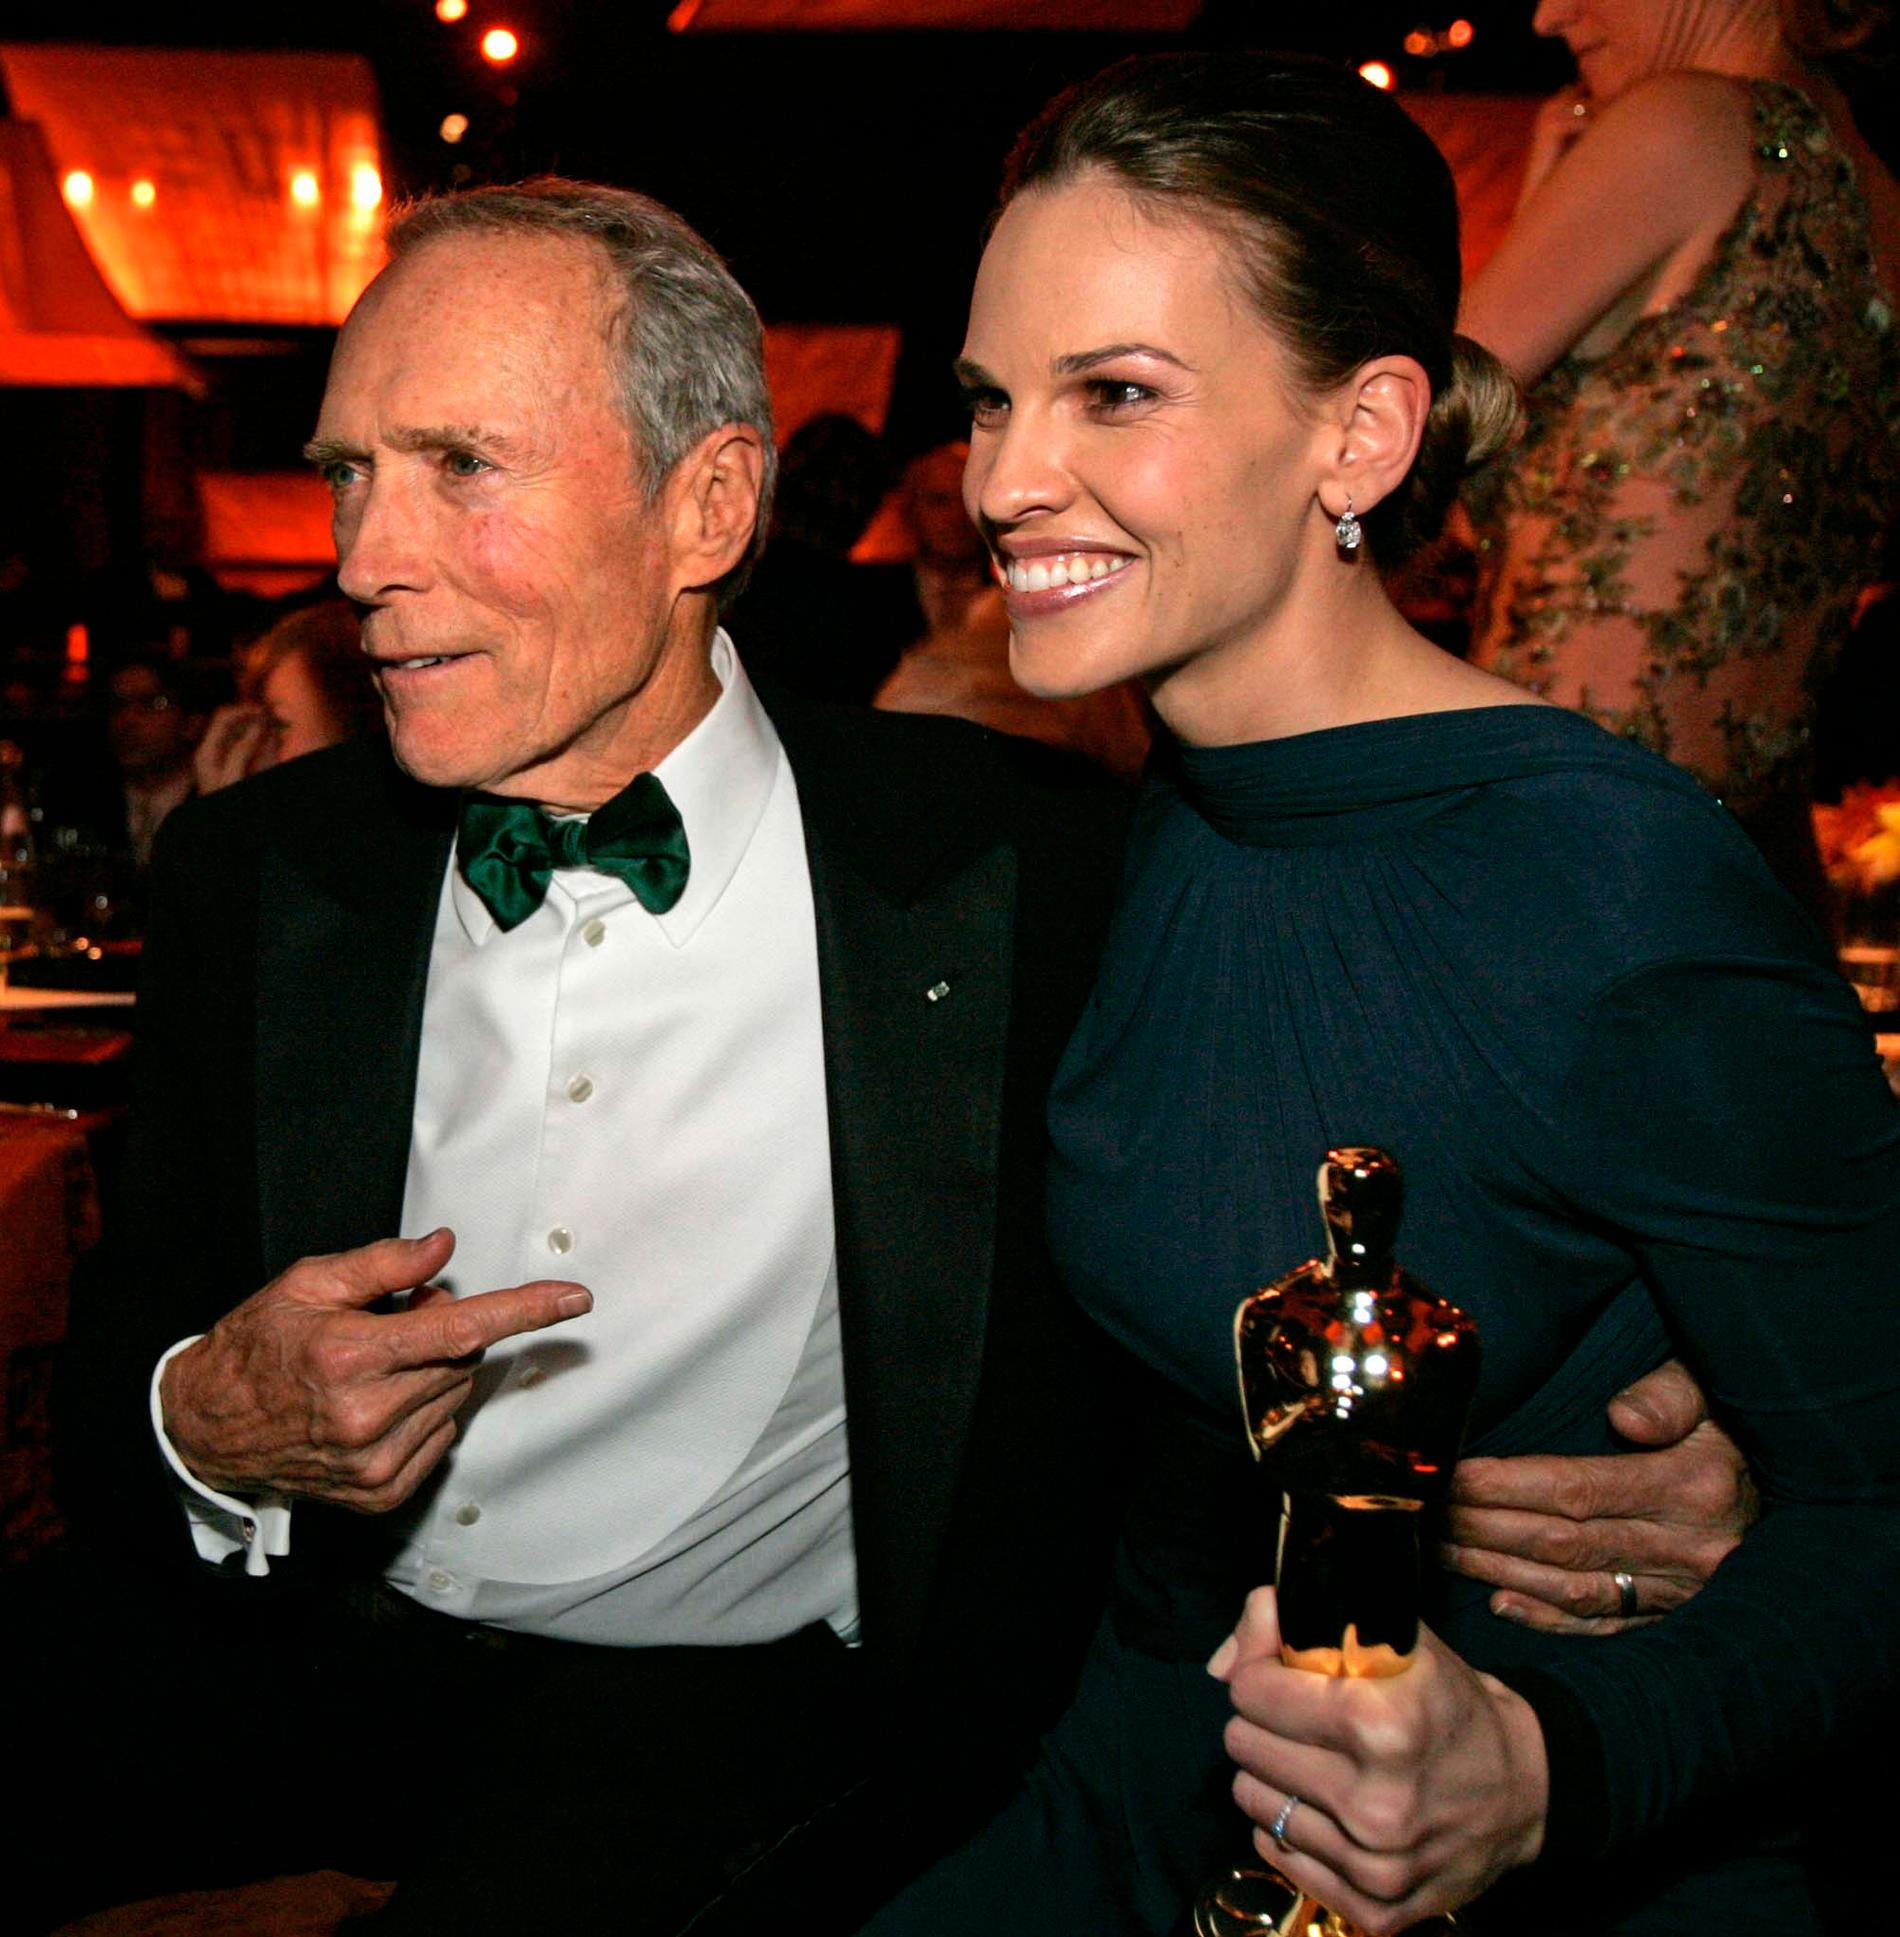 Clint Eastwood och Hilary Swank belönades bägge med Oscarsstatyetter 2005 för regi respektive kvinnliga huvudroll i ”Million dollar baby”.